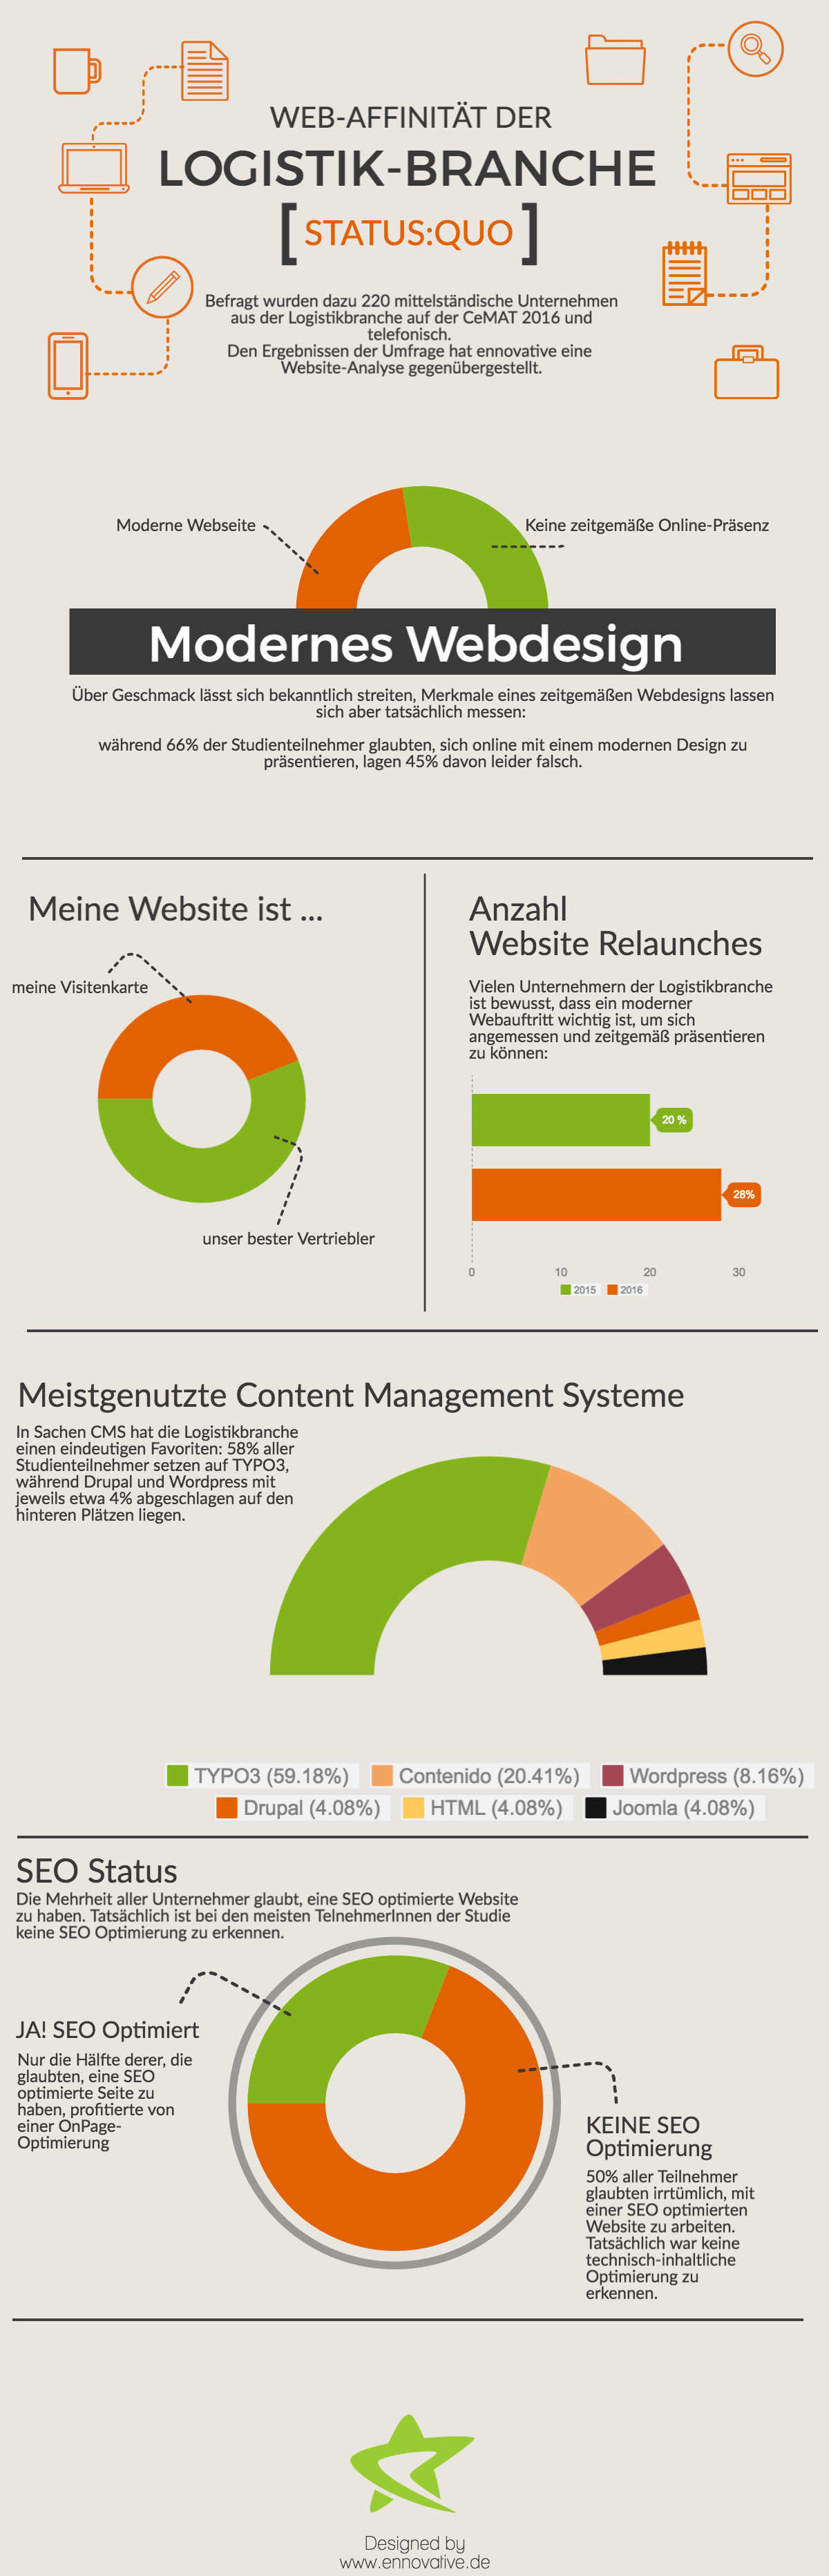 Eine Infografik der ennovative GmbH.